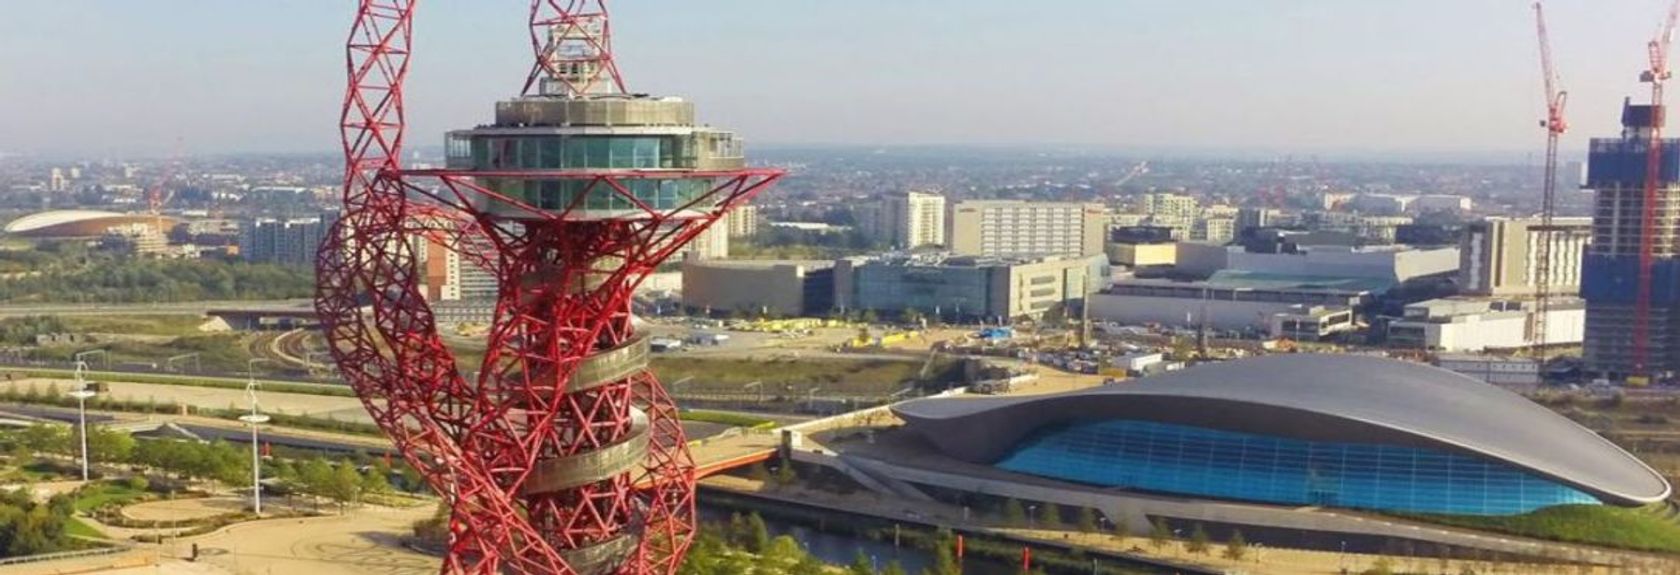 A ArcelorMittal Orbit é uma impressionante torre vermelha no meio do Parque Olímpico de Londres. A torre, que muitas vezes serve como um marco na região, foi oficialmente inaugurada em 11 de maio de 2012 antes do início das Olimpíadas de Verão de 2012 e desde então tem servido como uma torre de vigia onde você pode desfrutar da vista de Londres por uma taxa.